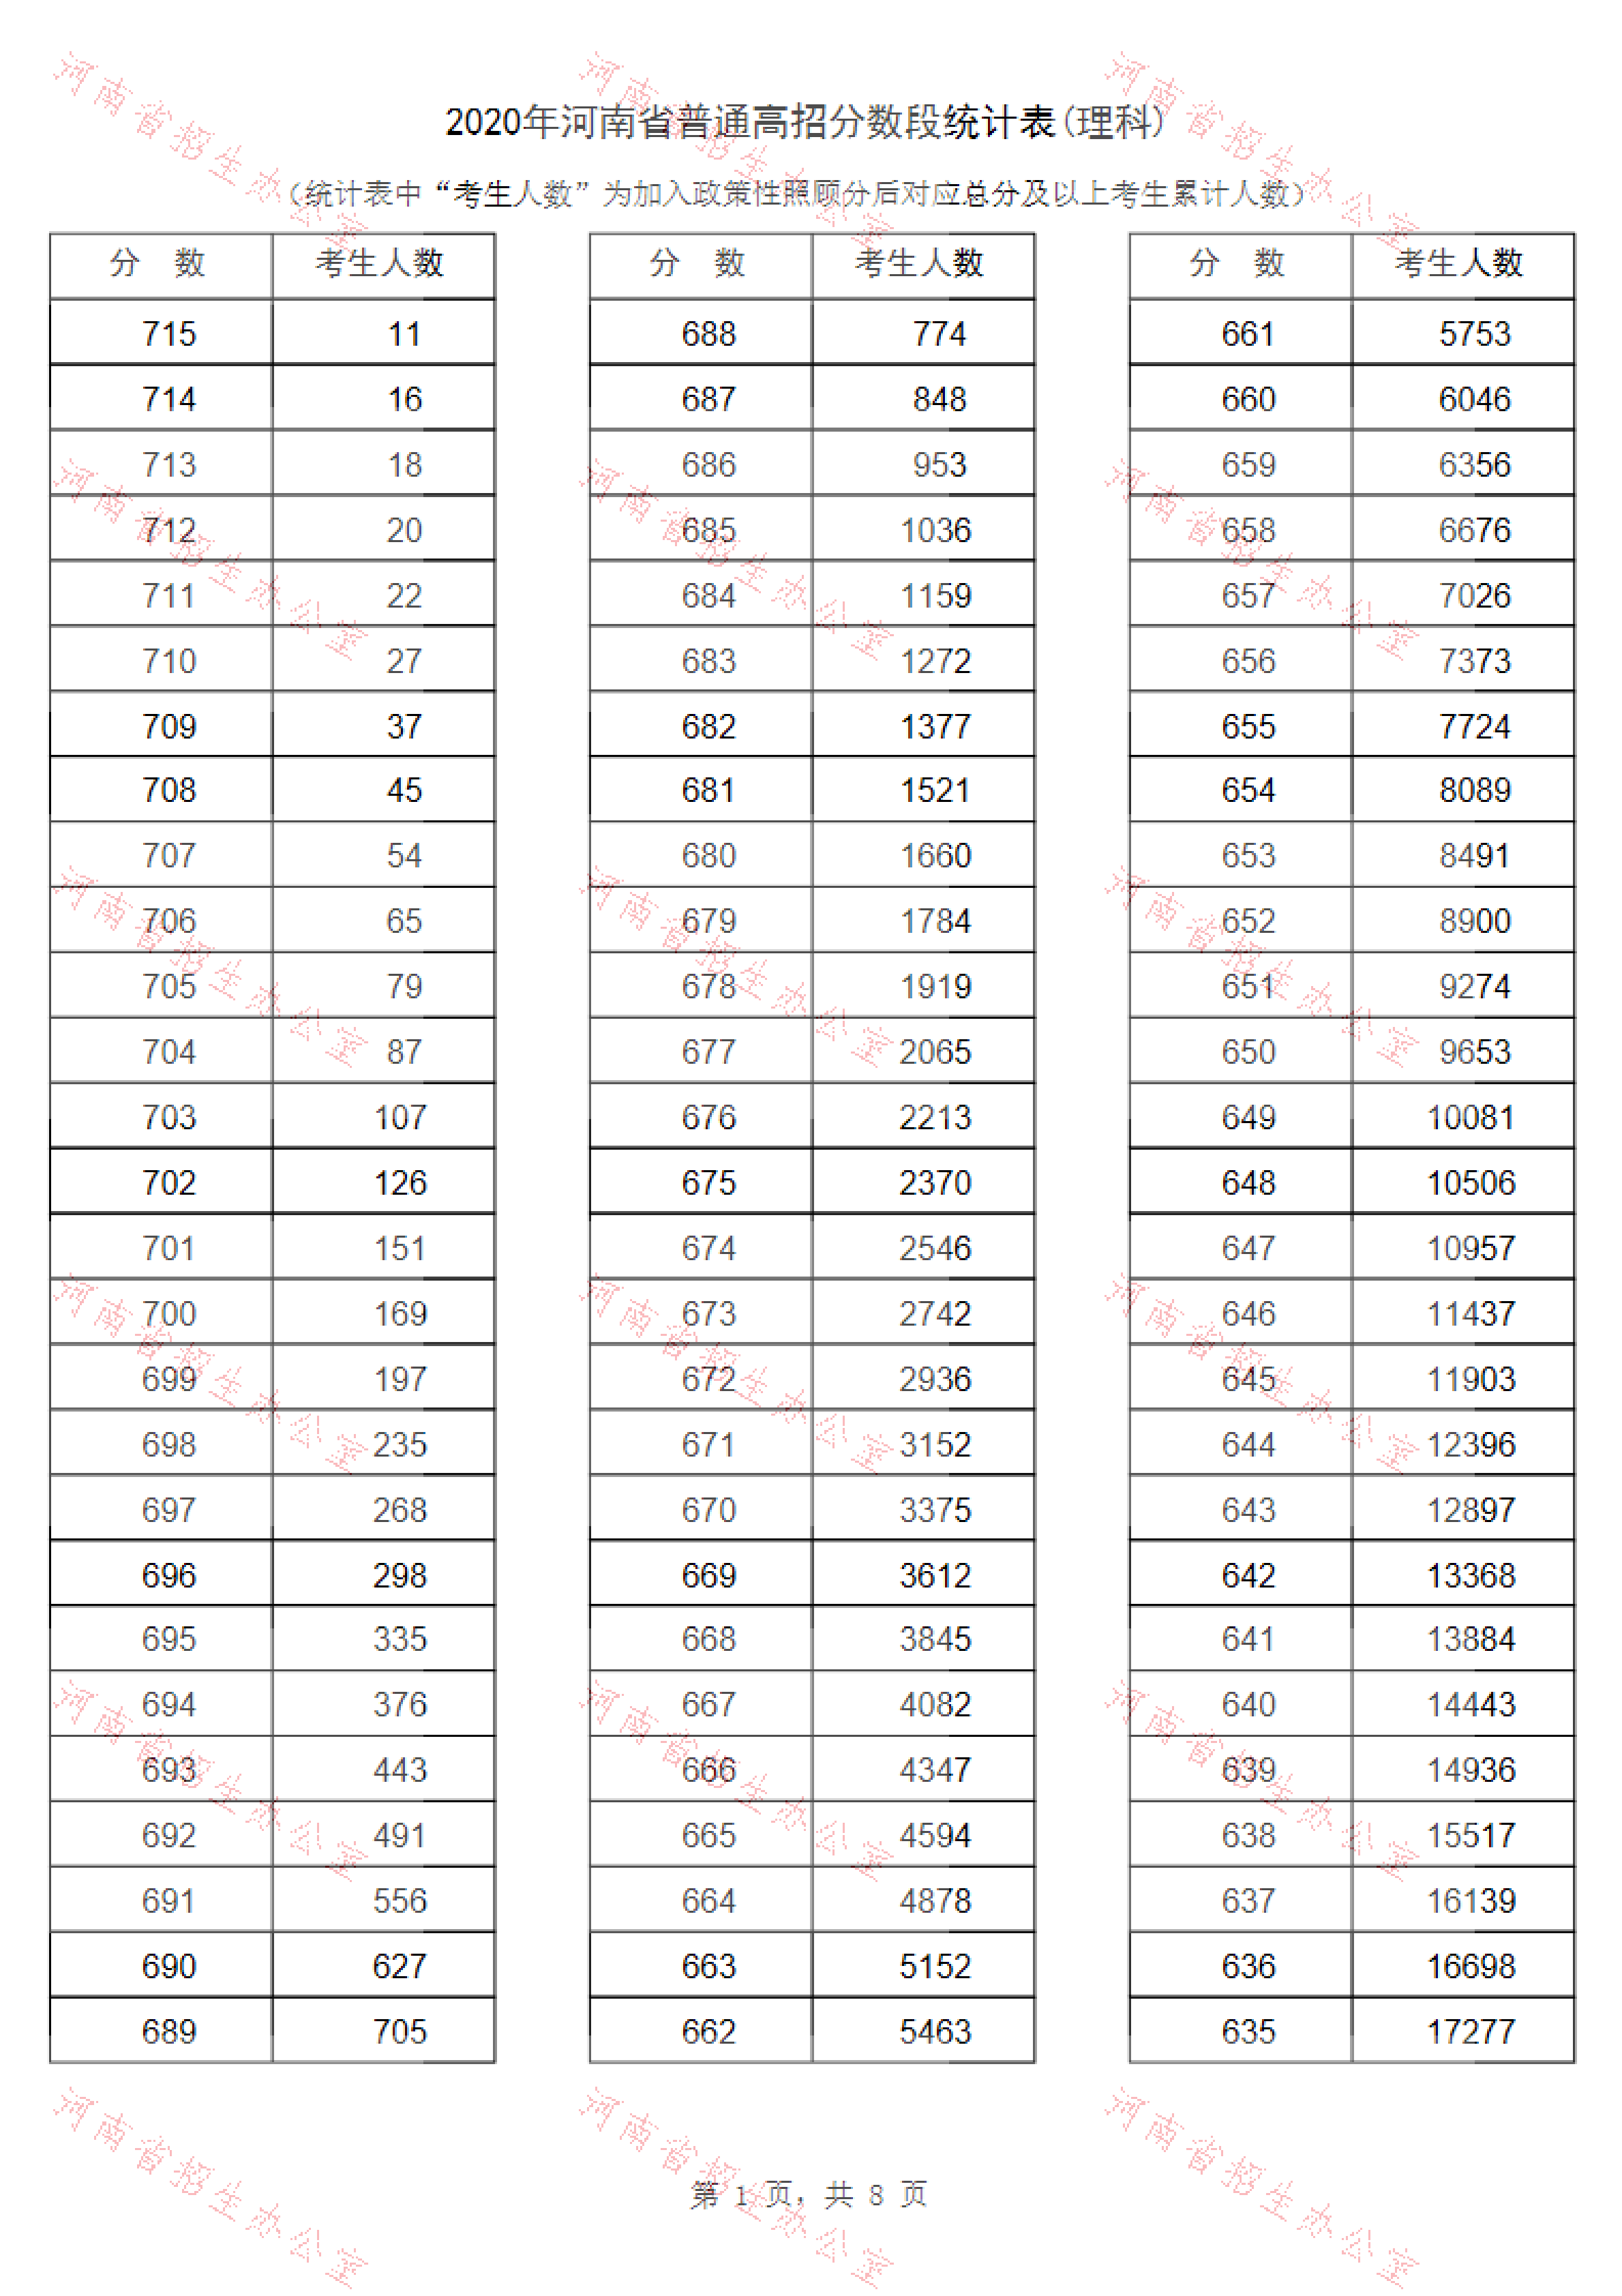 2020年河南高考文科/理科成绩排名 一分一段表